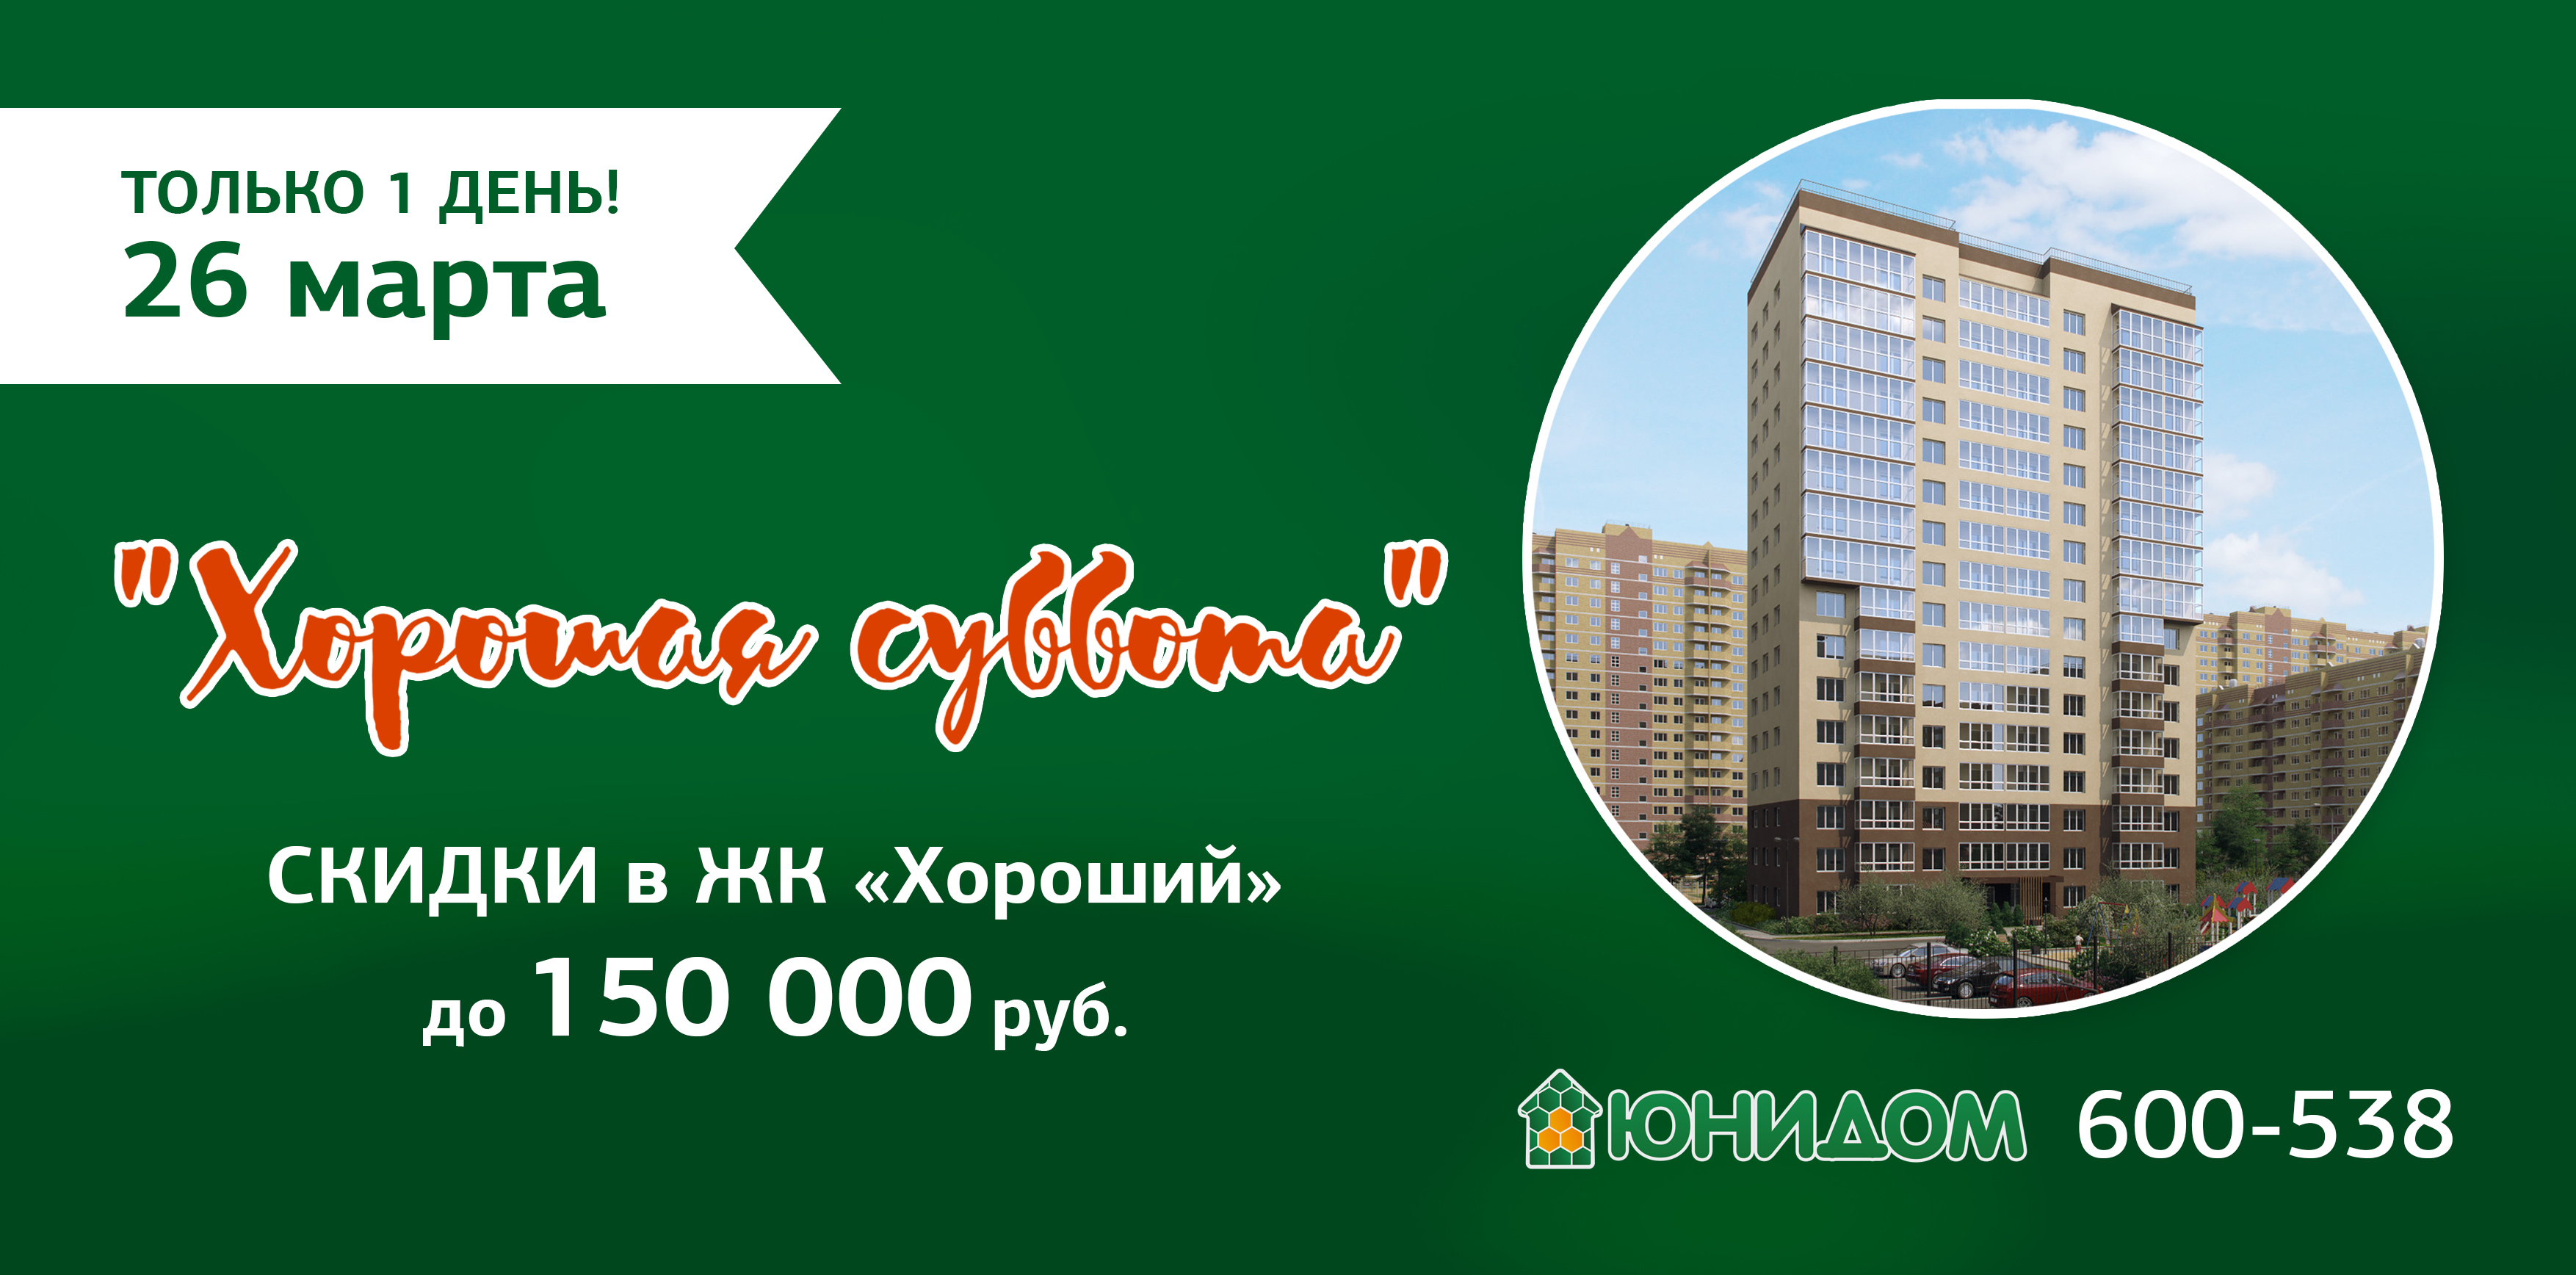 Купи свою «хорошую» квартиру со скидкой до 150 тыс. рублей!